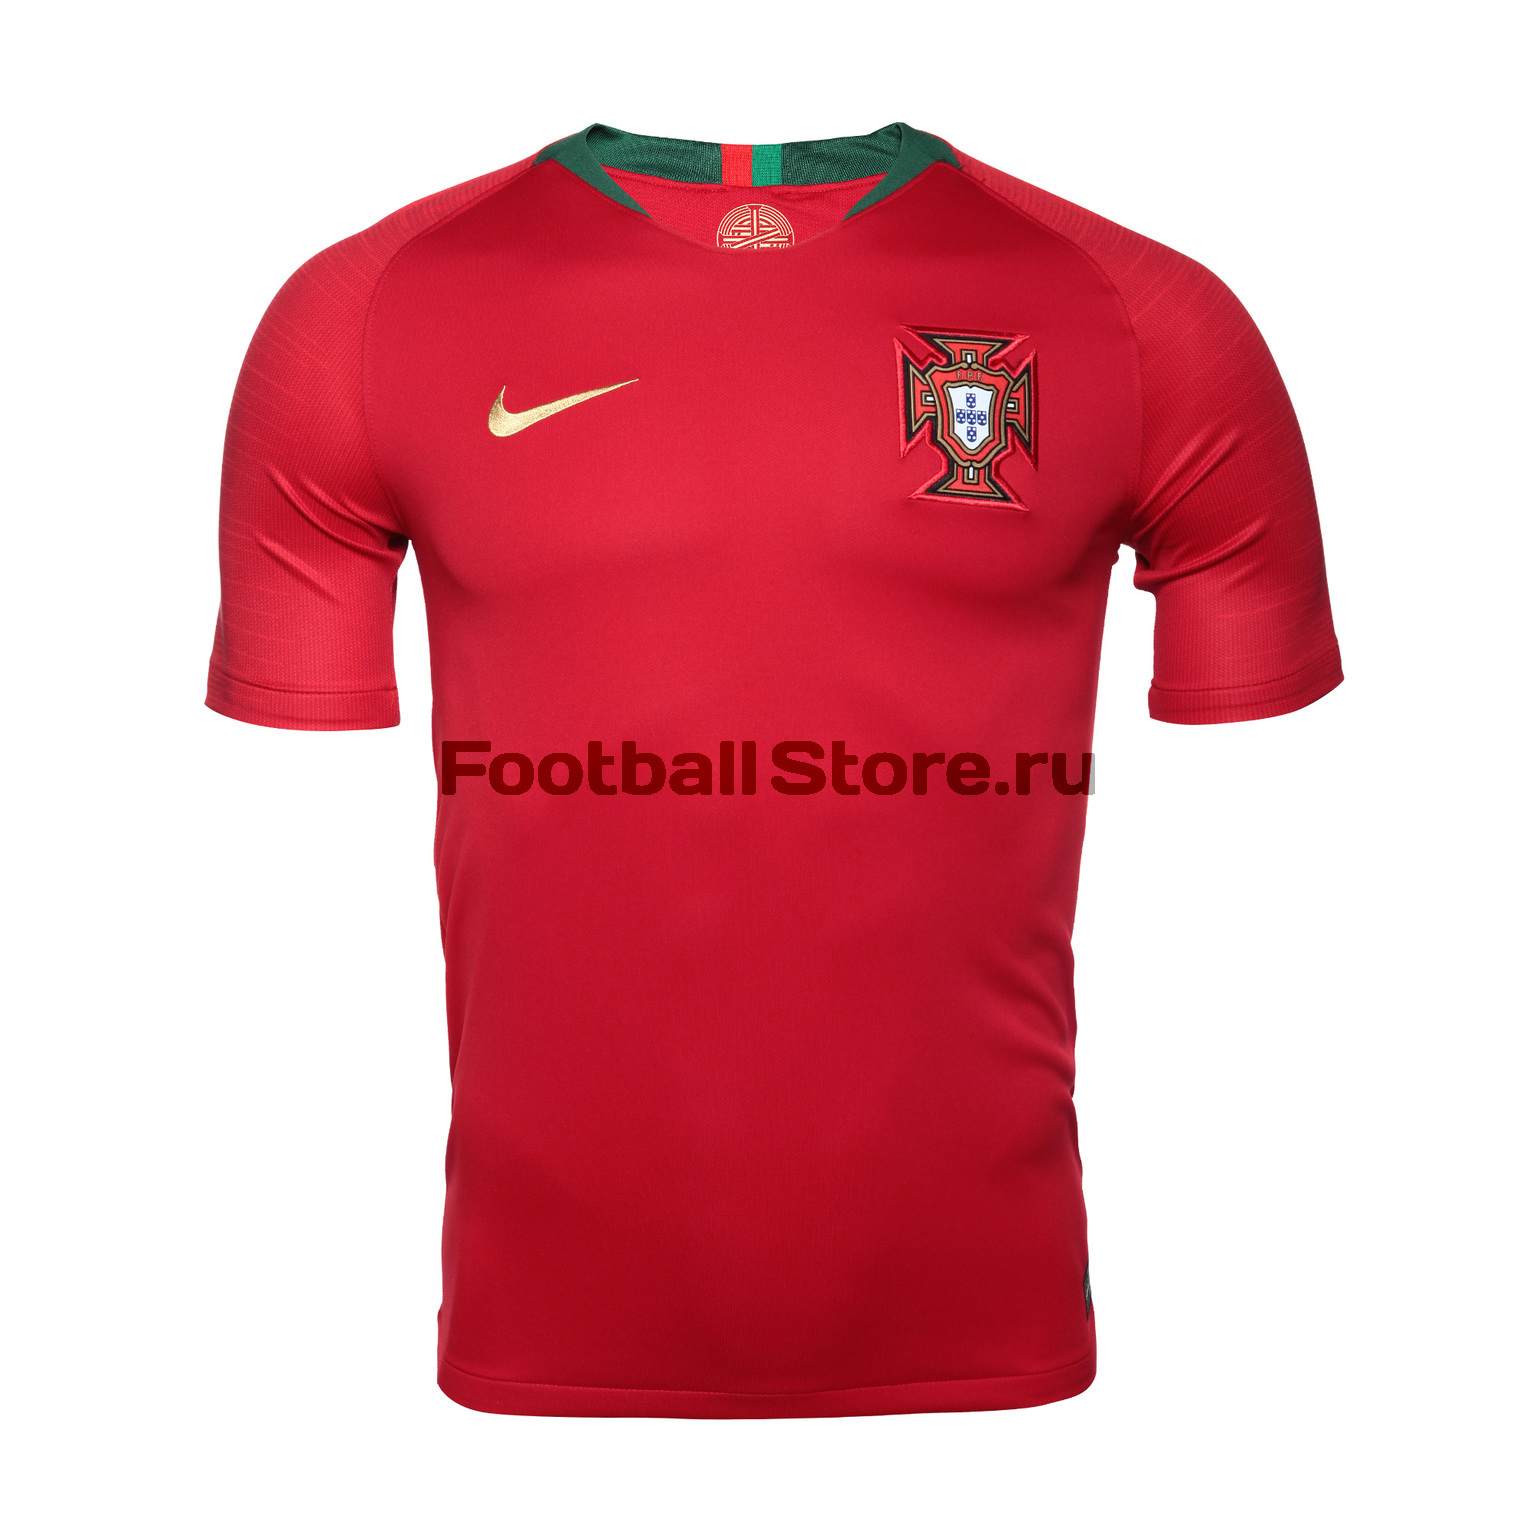 Футболка игровая Nike сборной Португалии 893877-687